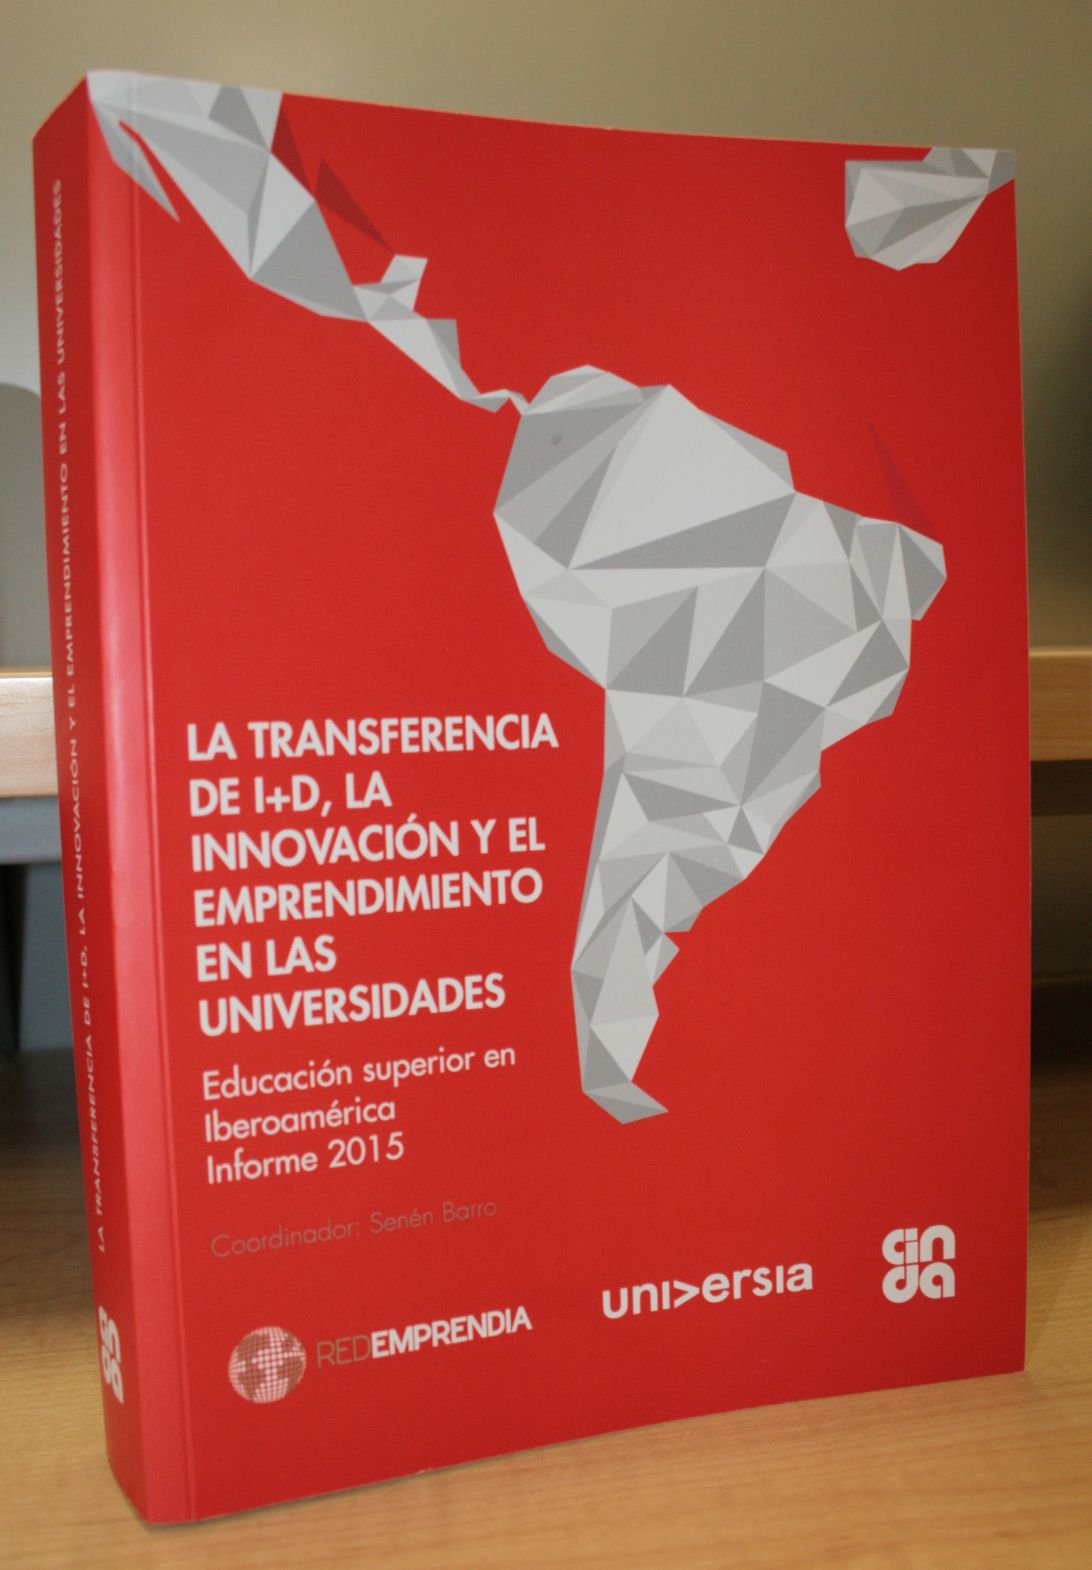 CINDA y Universia presentan libro sobre innovación y el emprendimiento en Iberoamérica